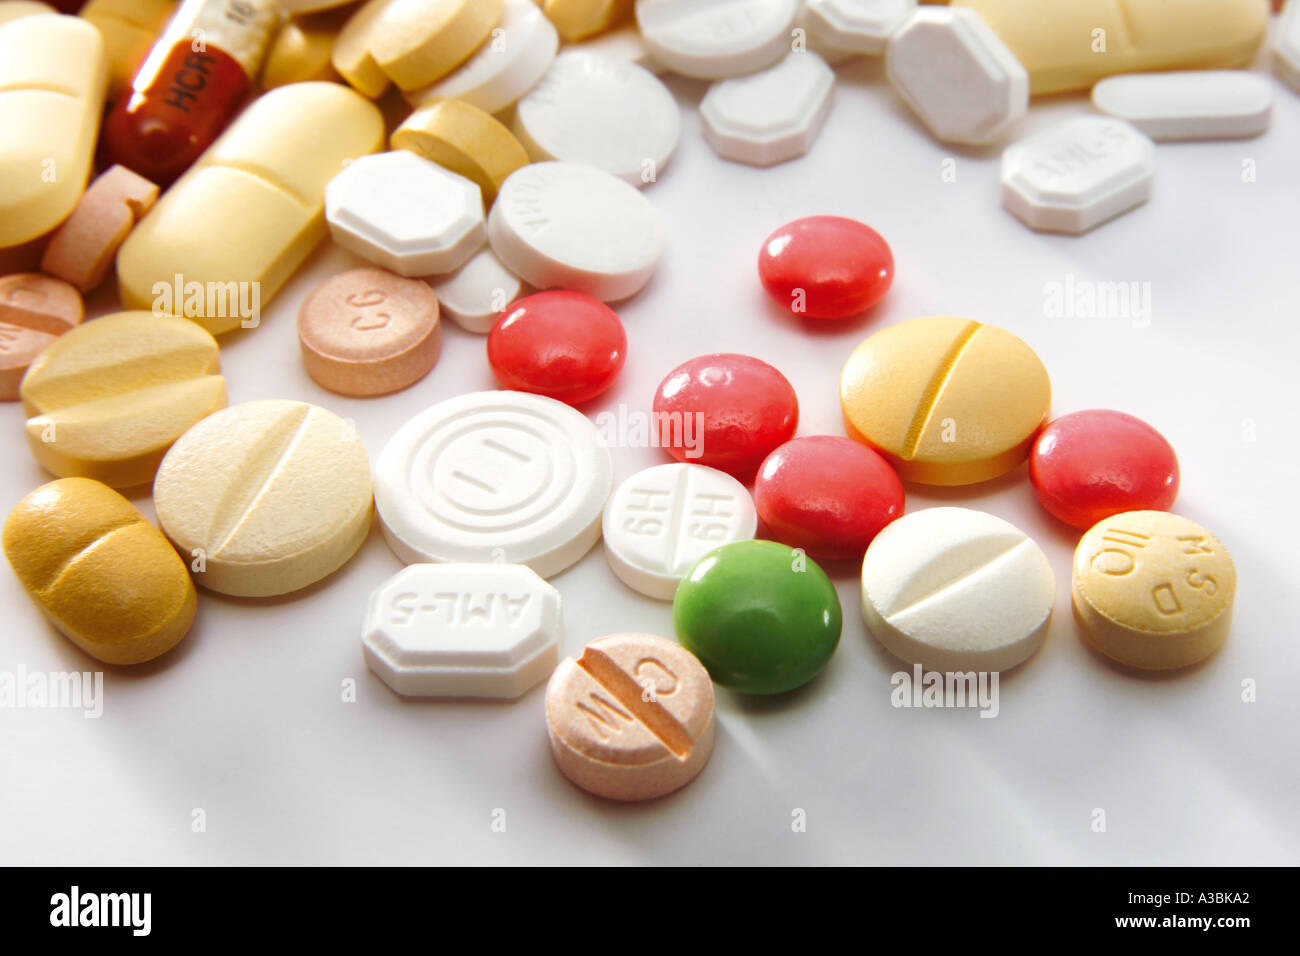 Pills, close-up Stock Photo